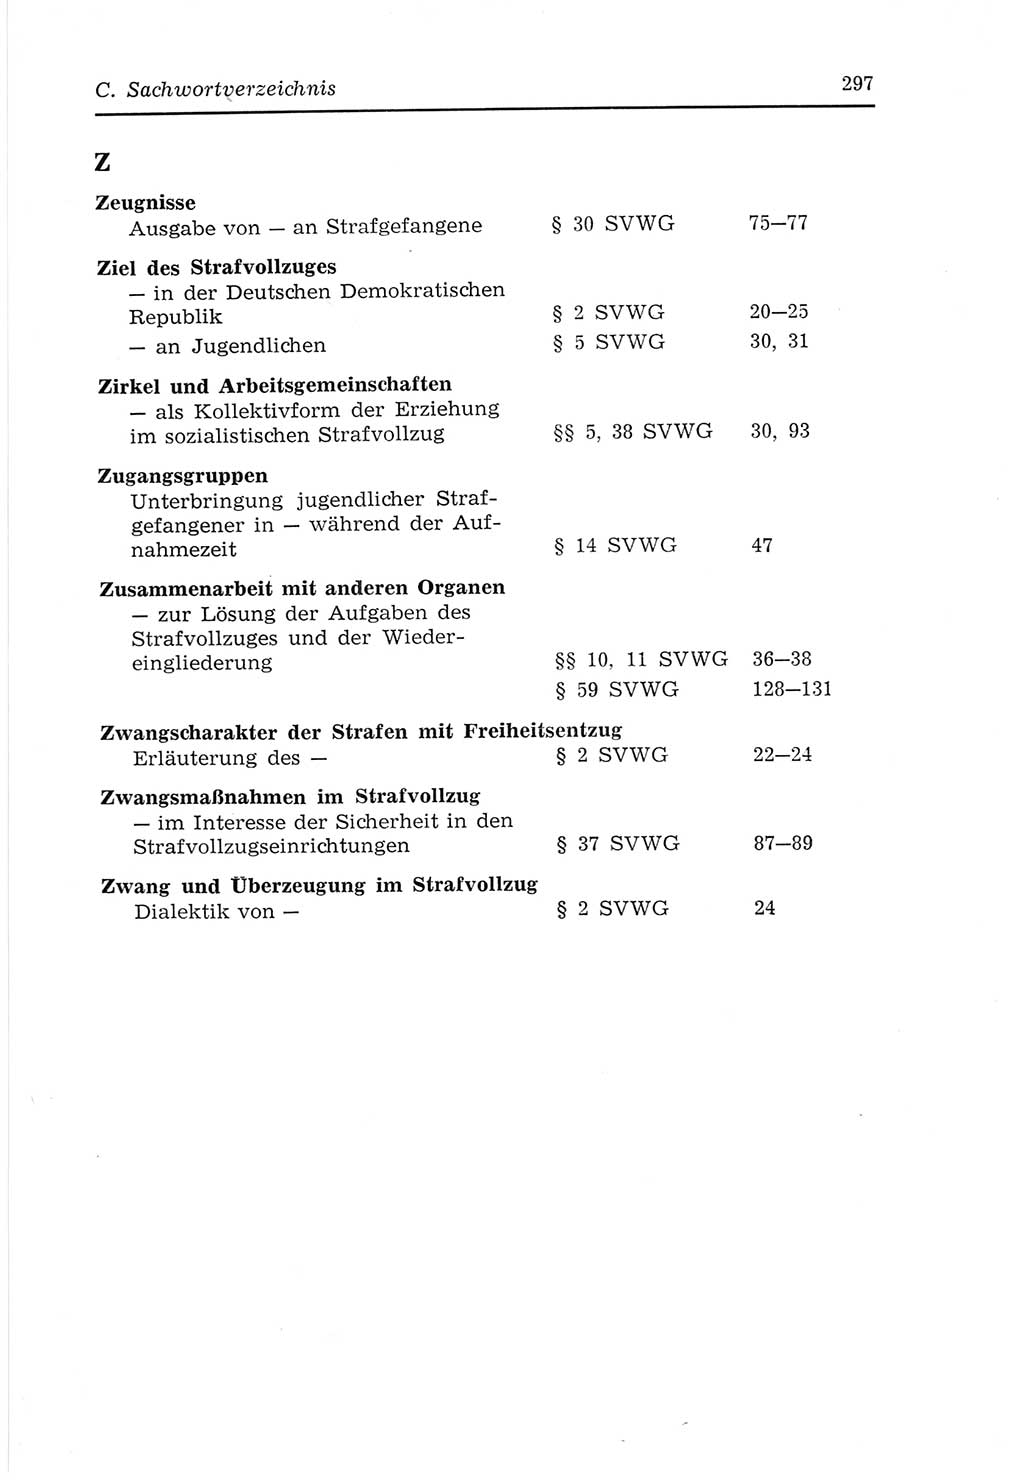 Strafvollzugs- und Wiedereingliederungsgesetz (SVWG) der Deutschen Demokratischen Republik (DDR) 1968, Seite 297 (SVWG DDR 1968, S. 297)